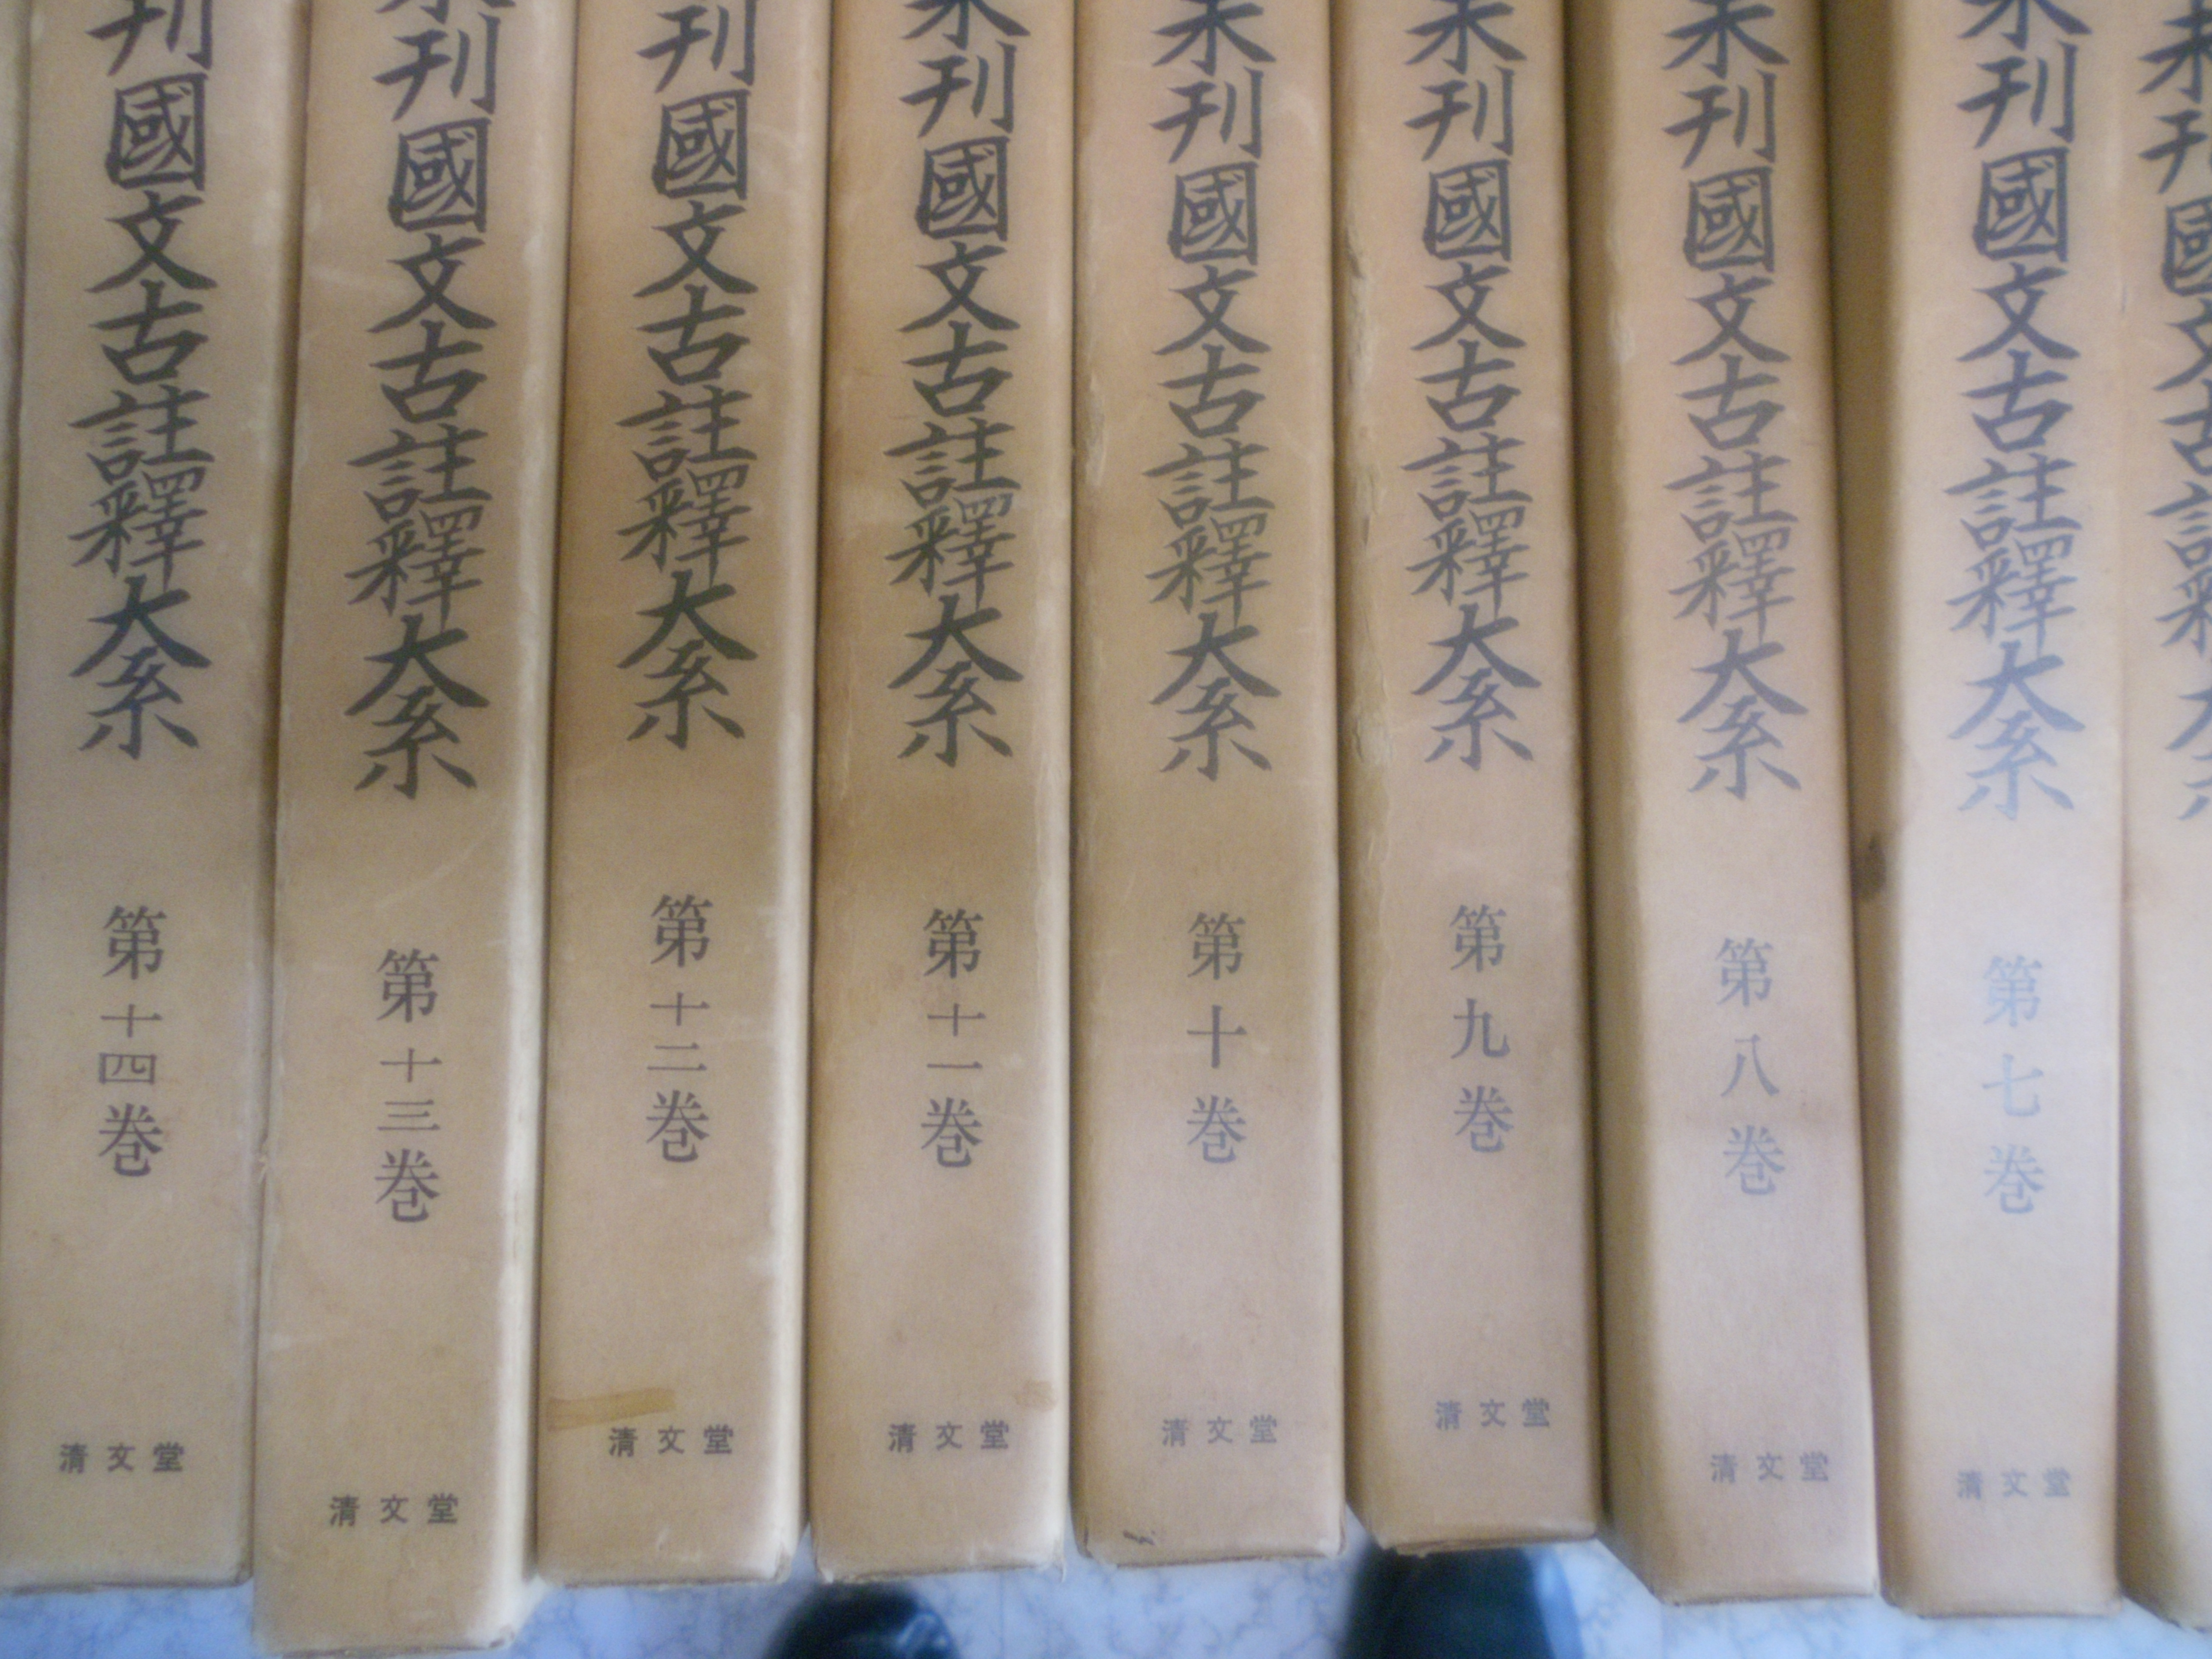 複刻版　未刊国文古註釈大系17冊　(全18巻のうち第4巻欠) 　吉沢義則編　清文堂　1968年刊